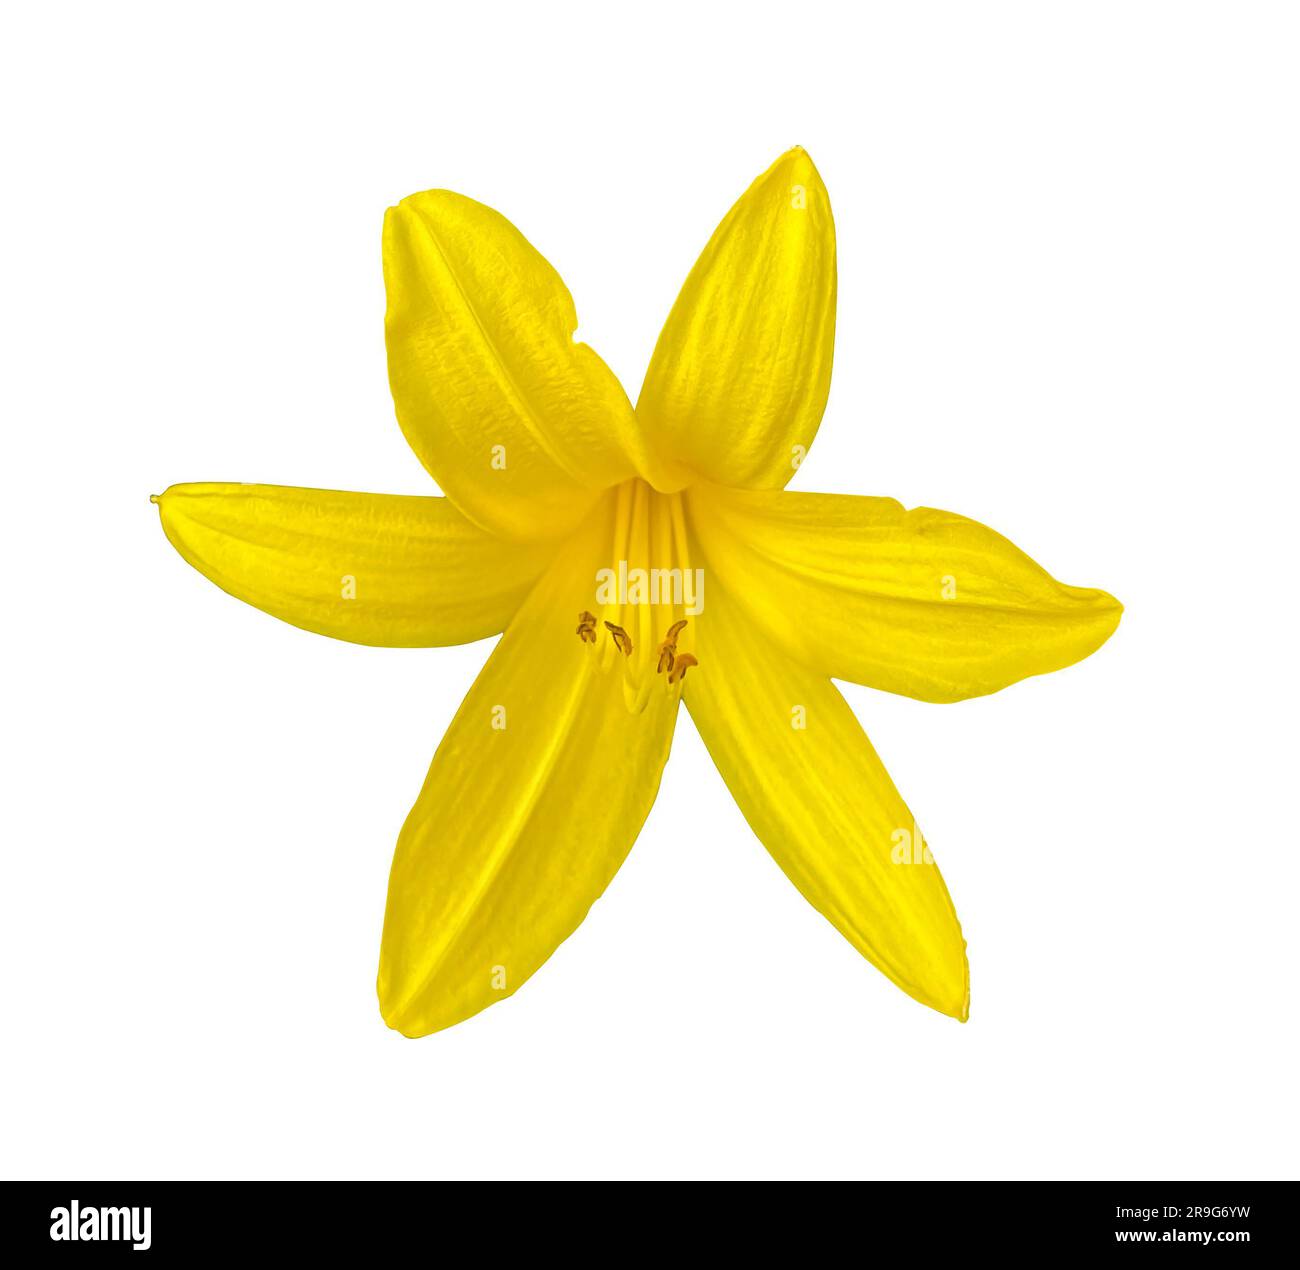 Sommerblüte der gelben Lily isoliert auf weißem Hintergrund mit Schnittpfad. Hemerocallis lililioasphodelus. Blühendes, mehrjähriges Kraut. Gelb Stockfoto